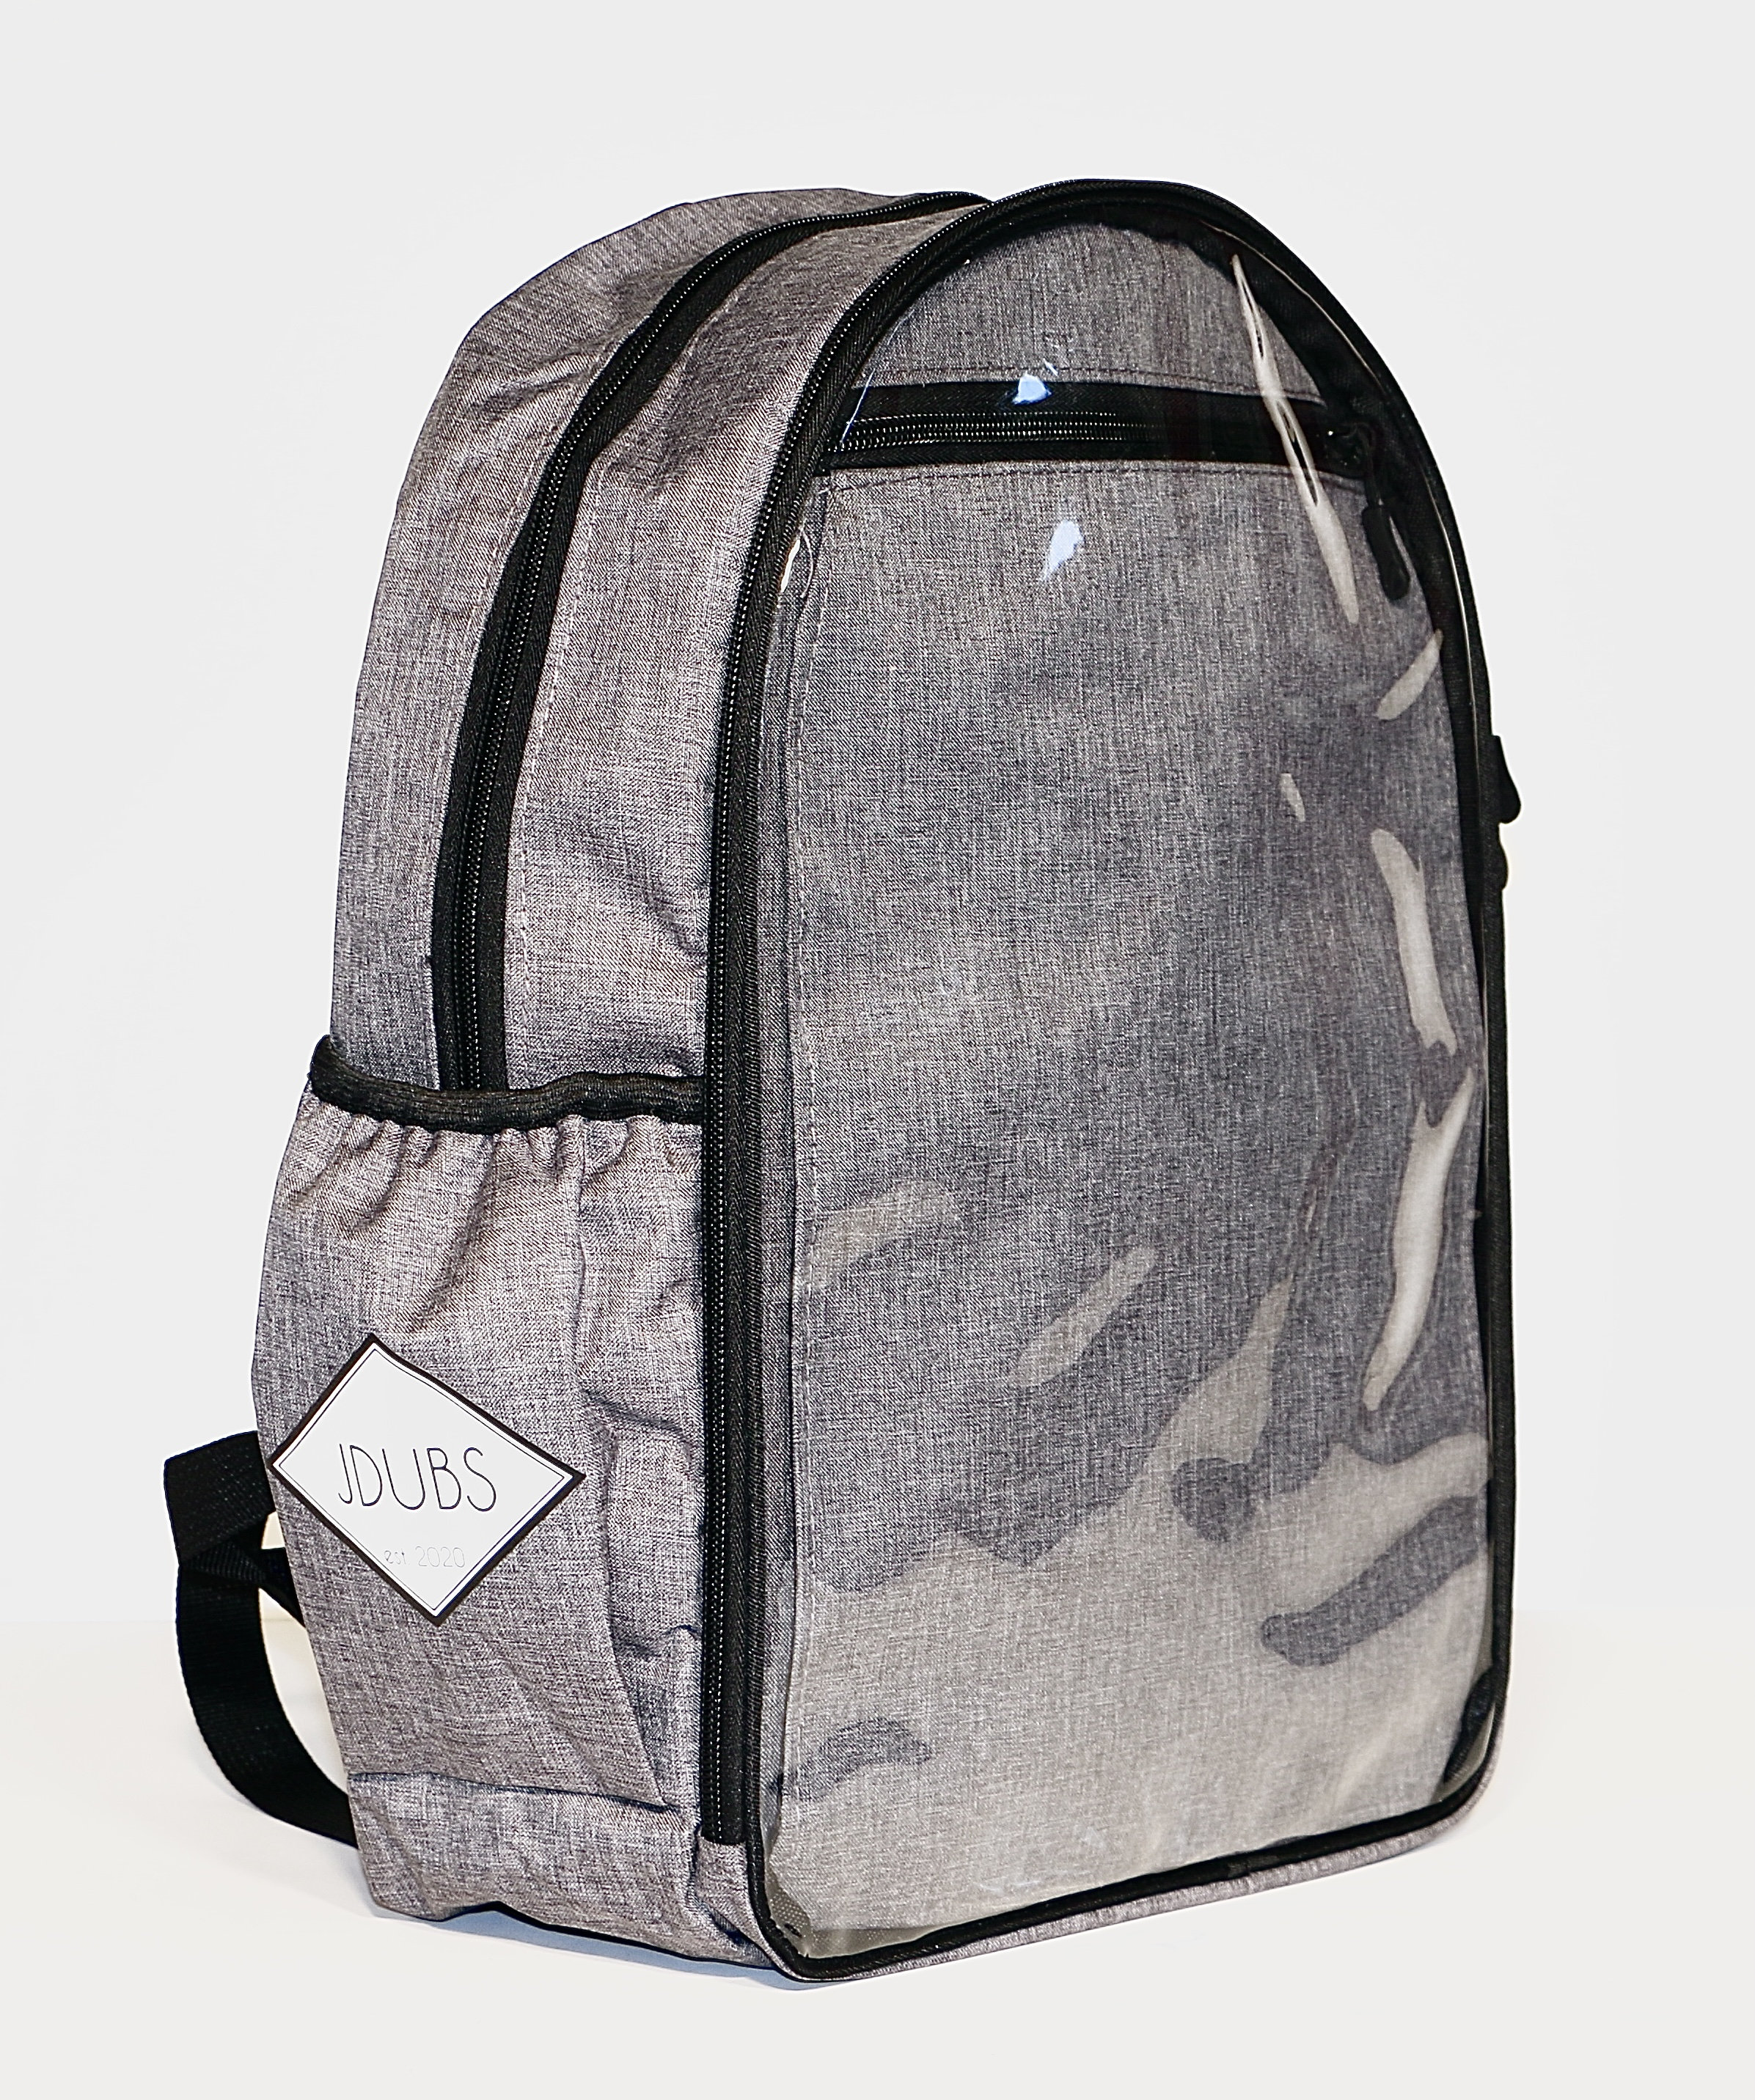 Bat Ita Bag - Pin Display Backpack & Purse – Bright Bat Design